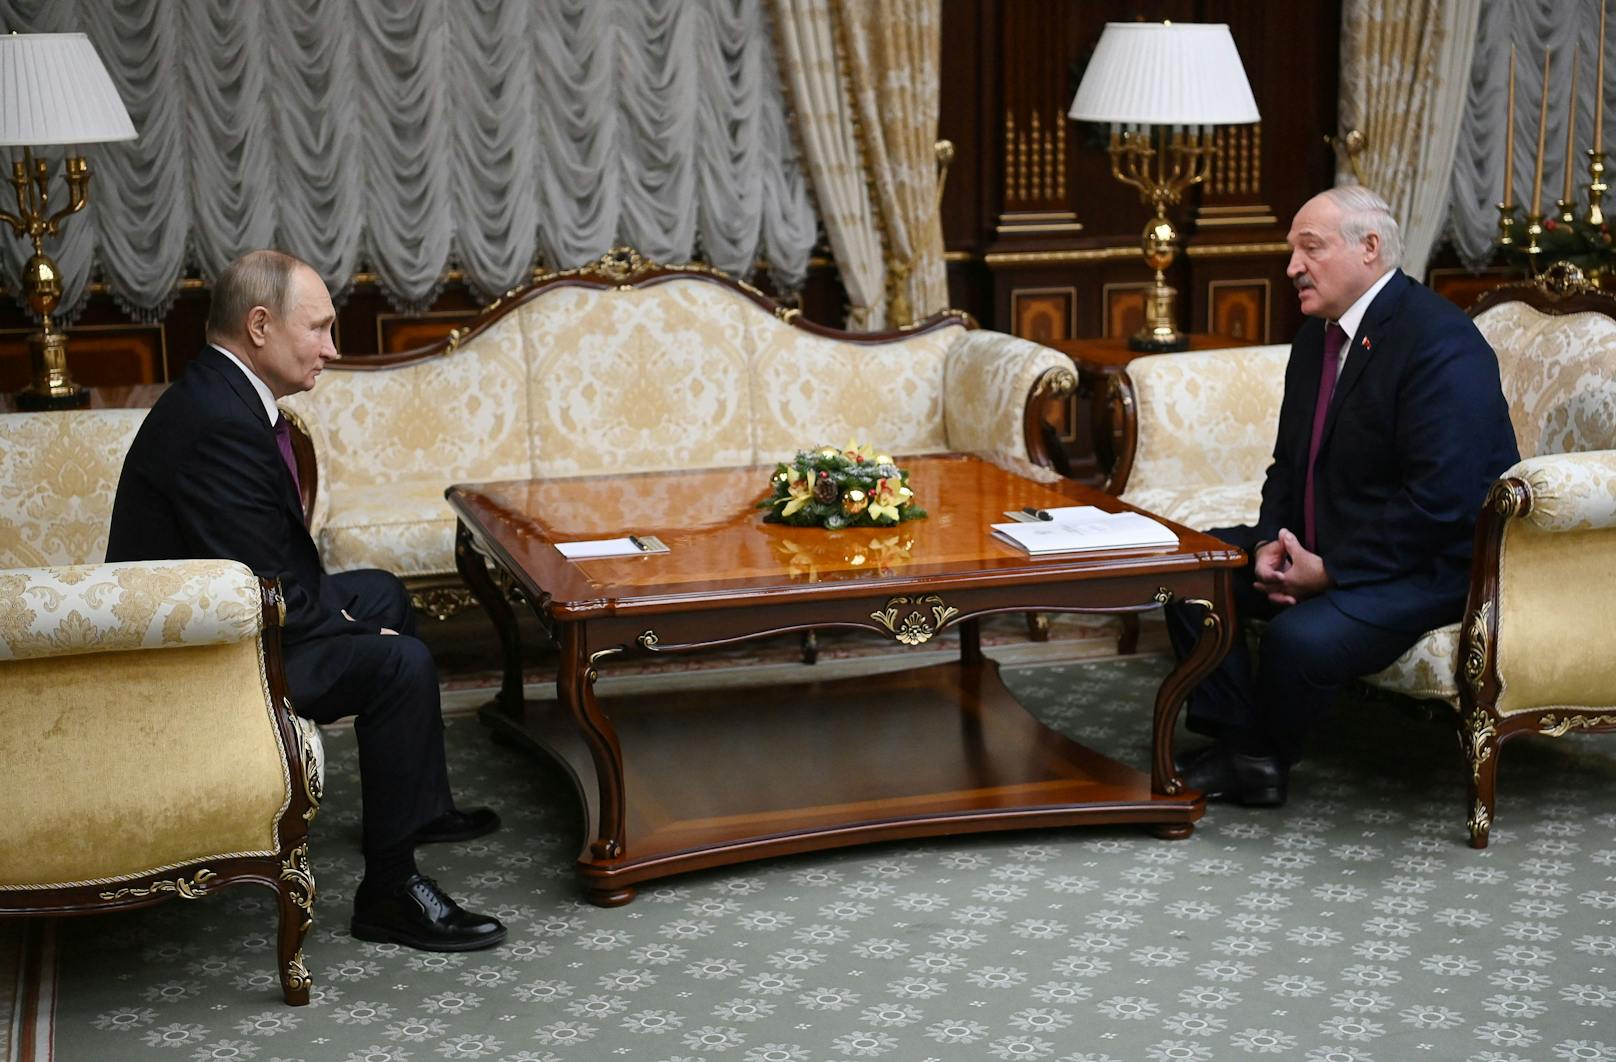 Vor der Visite hatte Lukaschenko angekündigt, dass es in erster Linie um eine Vertiefung der wirtschaftlichen Zusammenarbeit gehen werde.